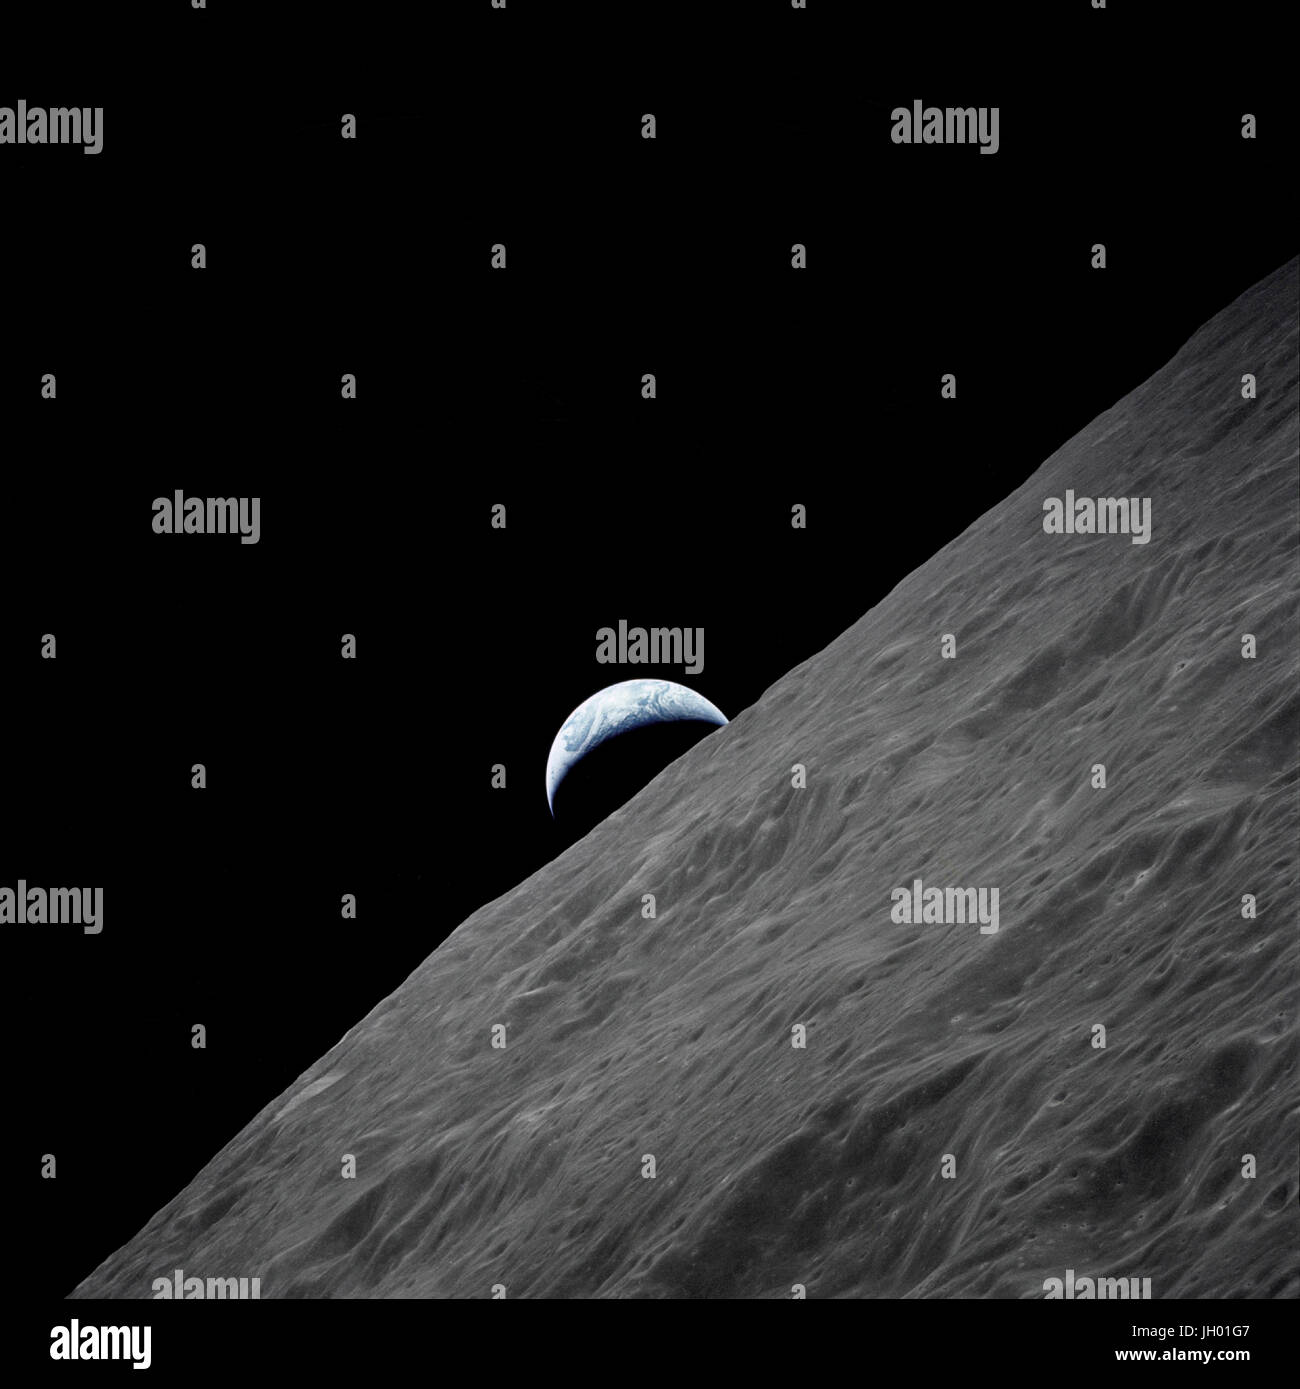 Le croissant lunaire de la Terre s'élève au-dessus de l'horizon dans ce spectaculaire photographie prise du vaisseau Apollo 17 en orbite lunaire pendant l'atterrissage lunaire final mission dans le programme Apollo. Photo de la NASA Banque D'Images